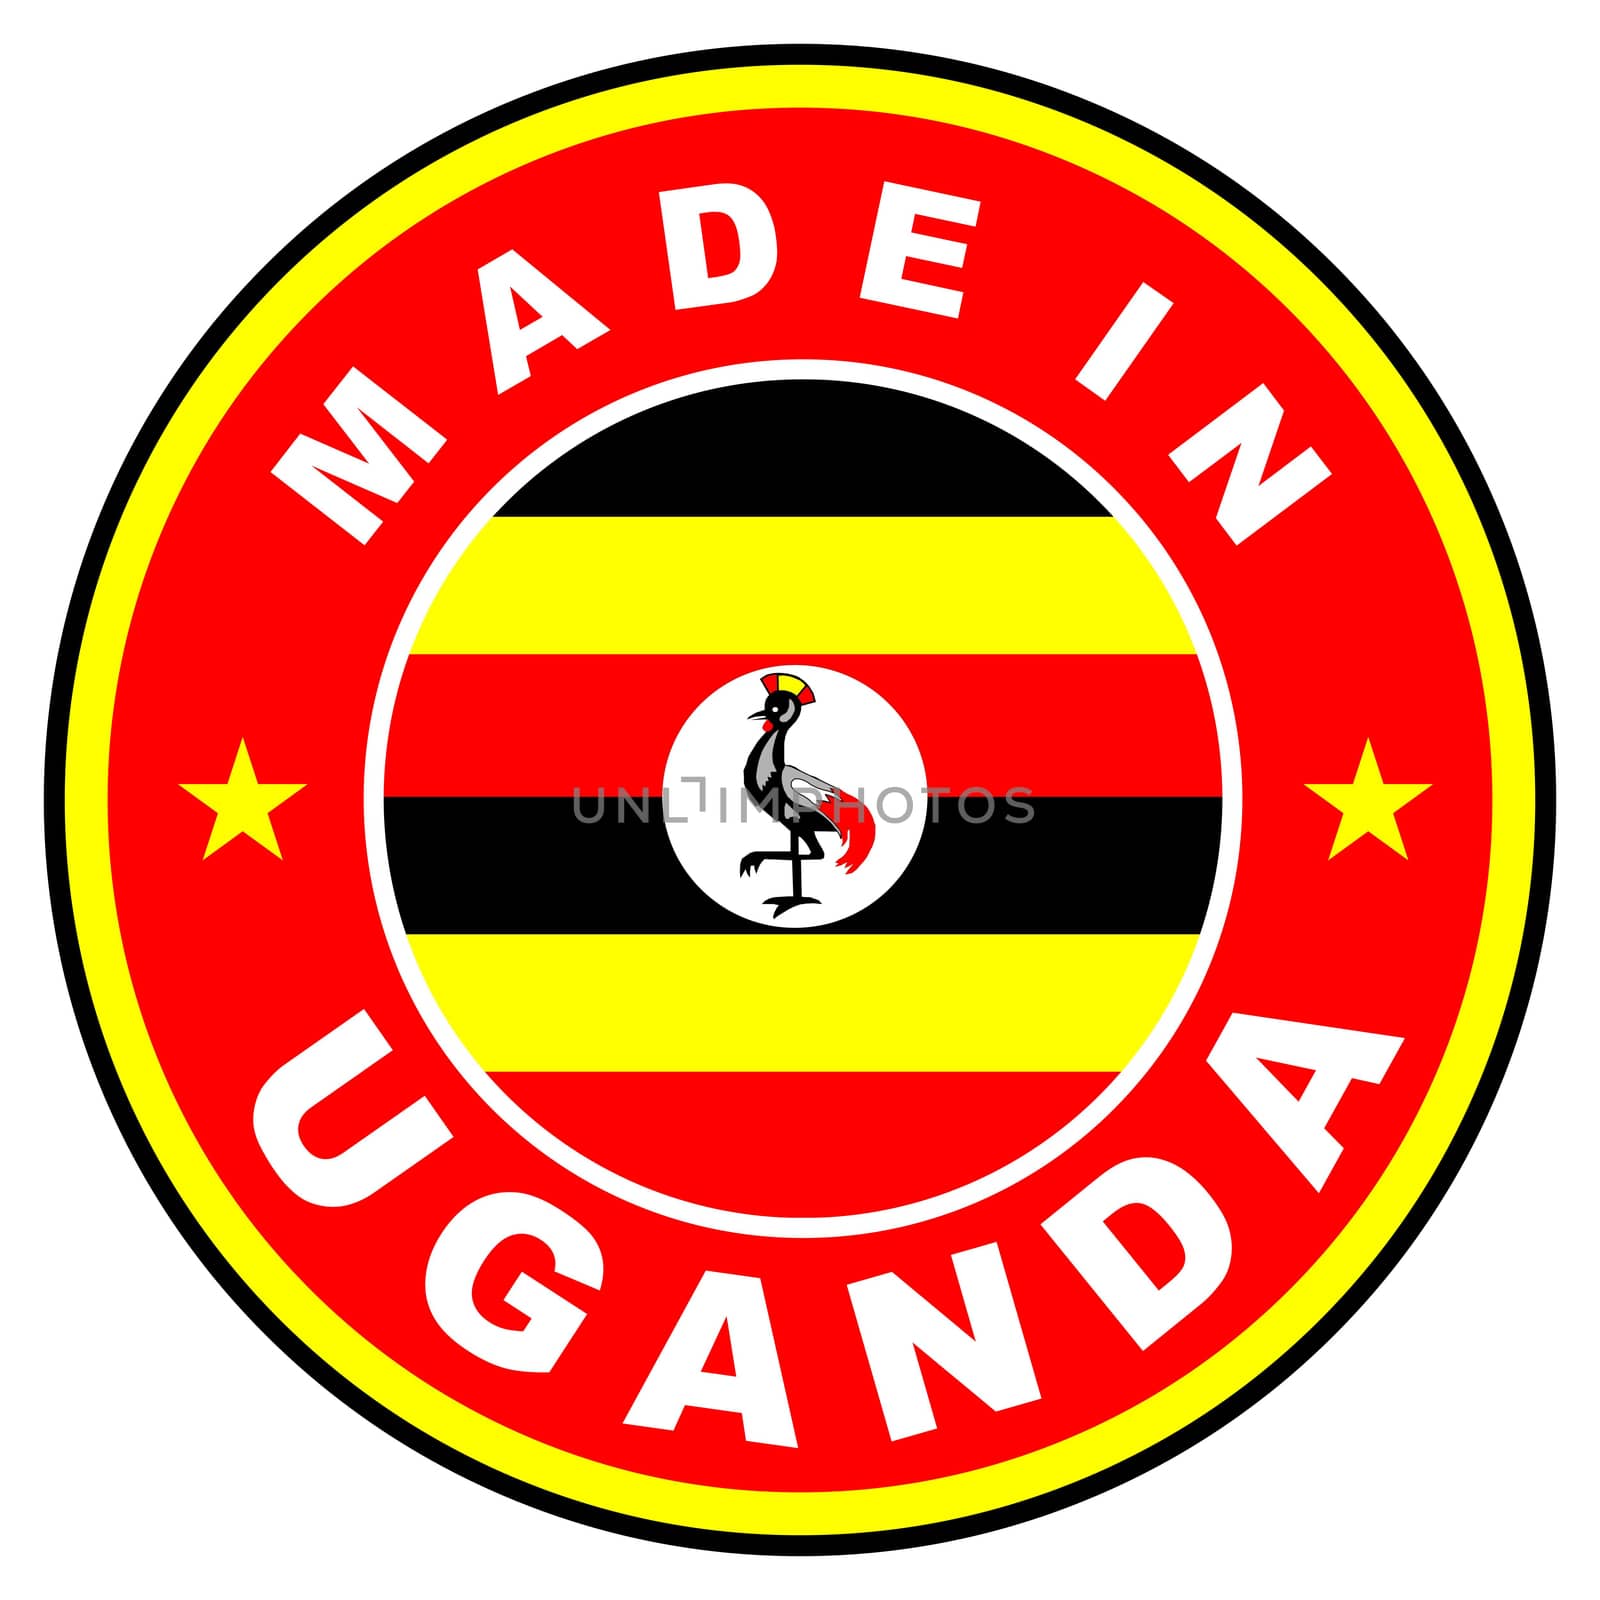 very big size made in uganda label illustratioan